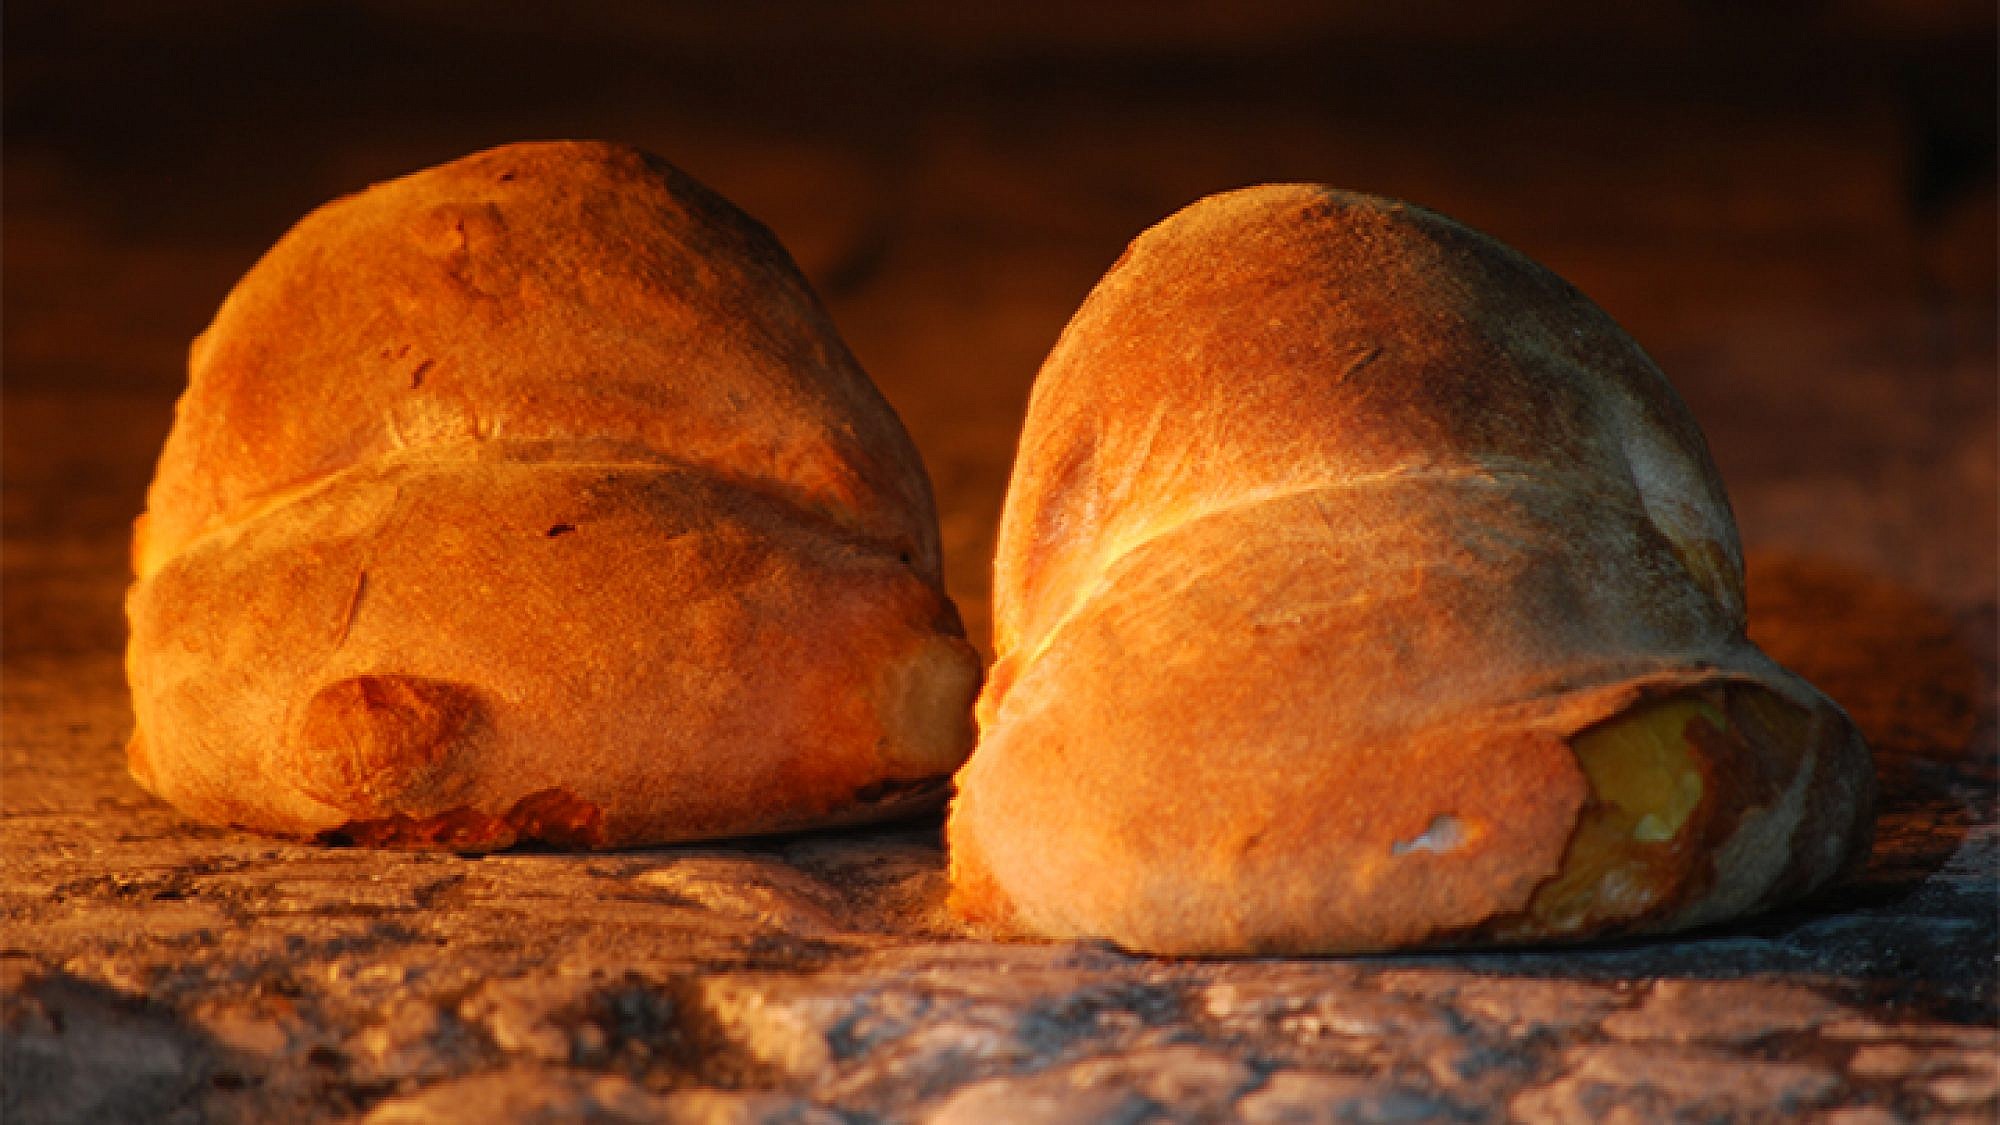 סוג הלחם שמייצרים באלטמורה הוא מהעתיקים בעולם. צילום: Francesco Paolo Fumarola CC